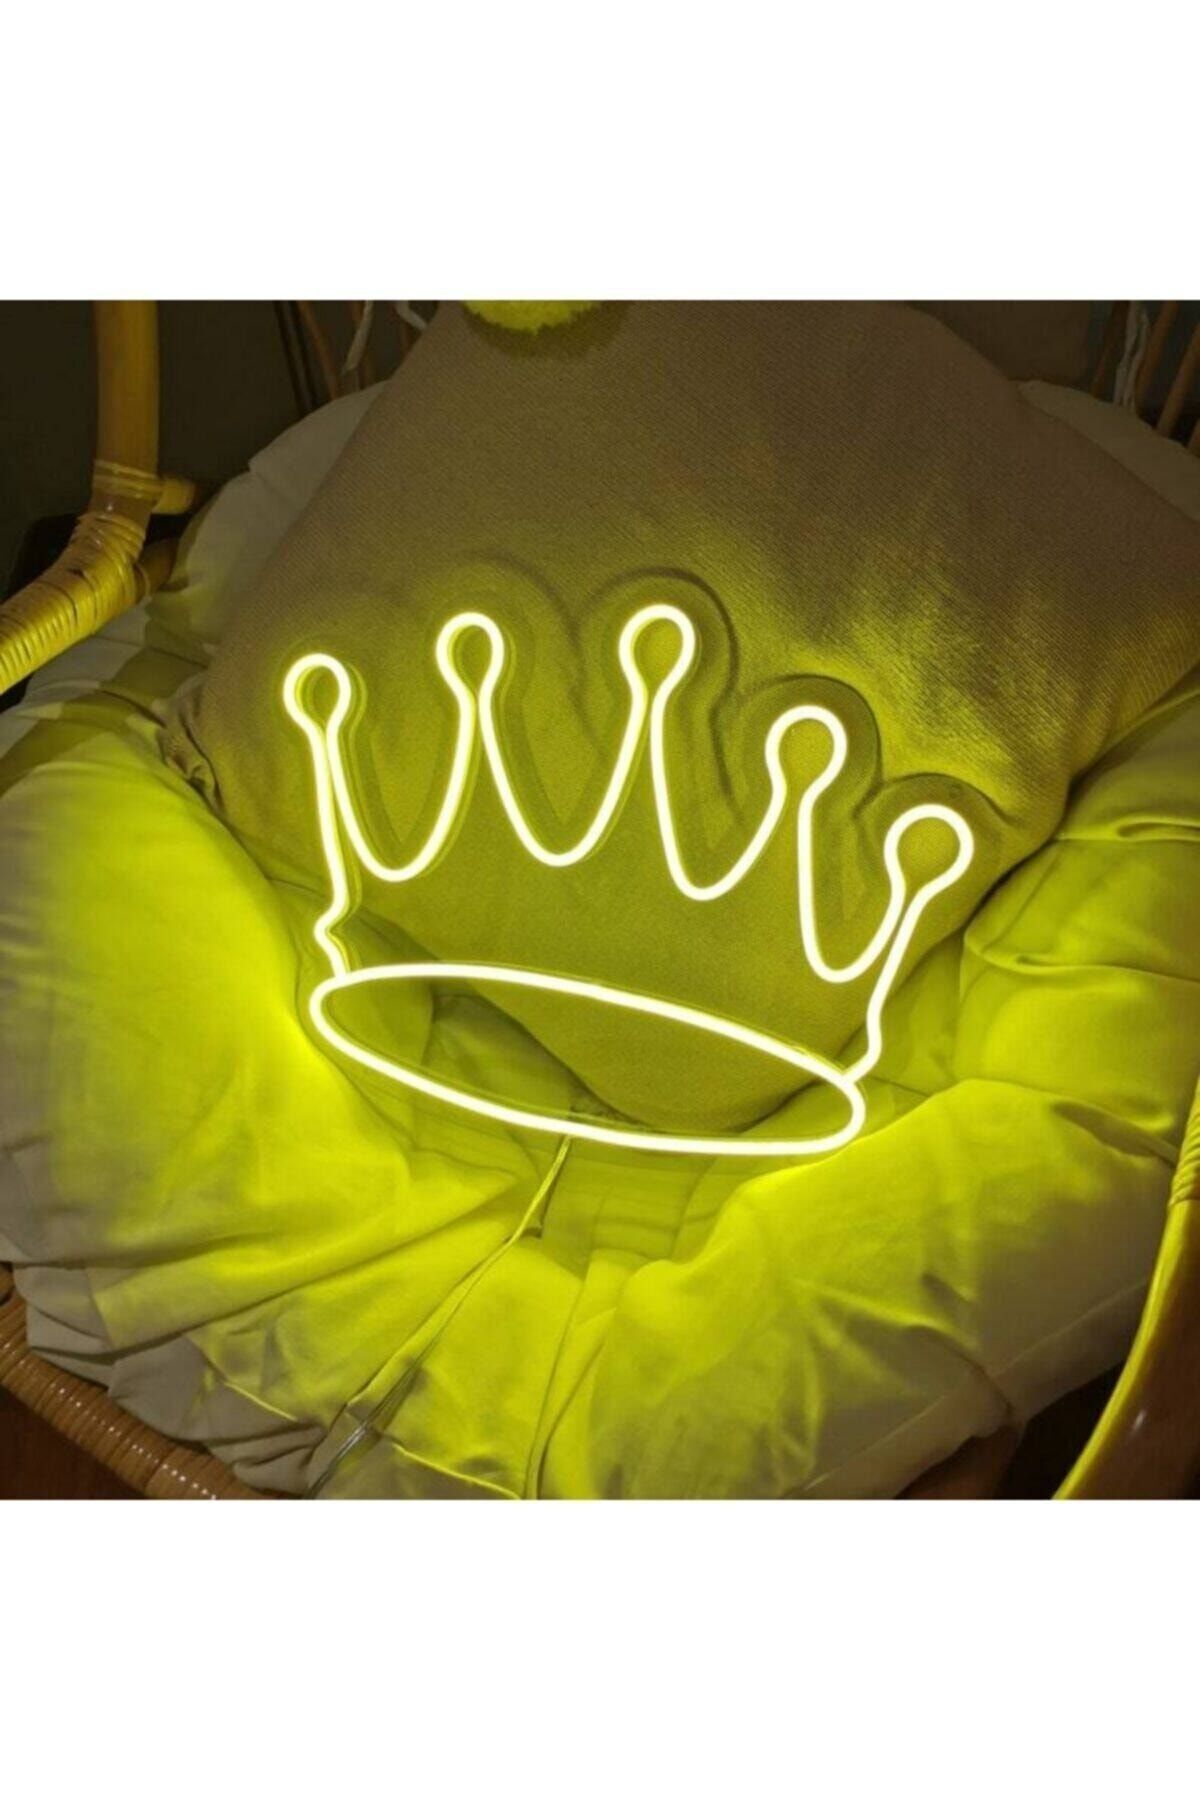 vinyuup Kral Tacı Neon Led Yalı Çapkını Özel